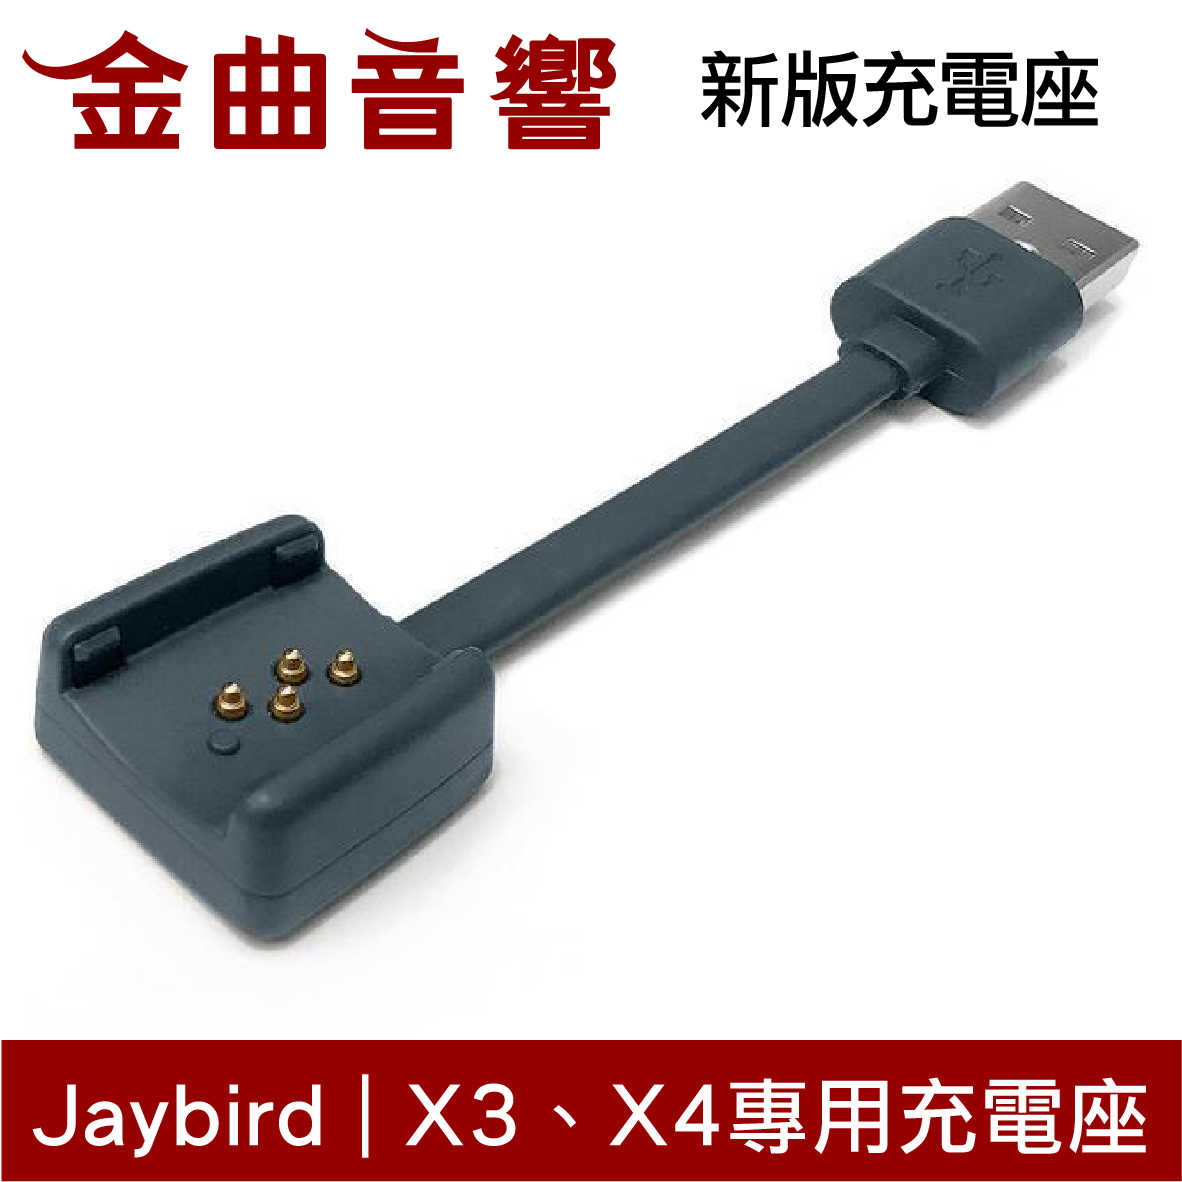 JAYBIRD X3 X4  freedom 充電座 含線 | 金曲音響